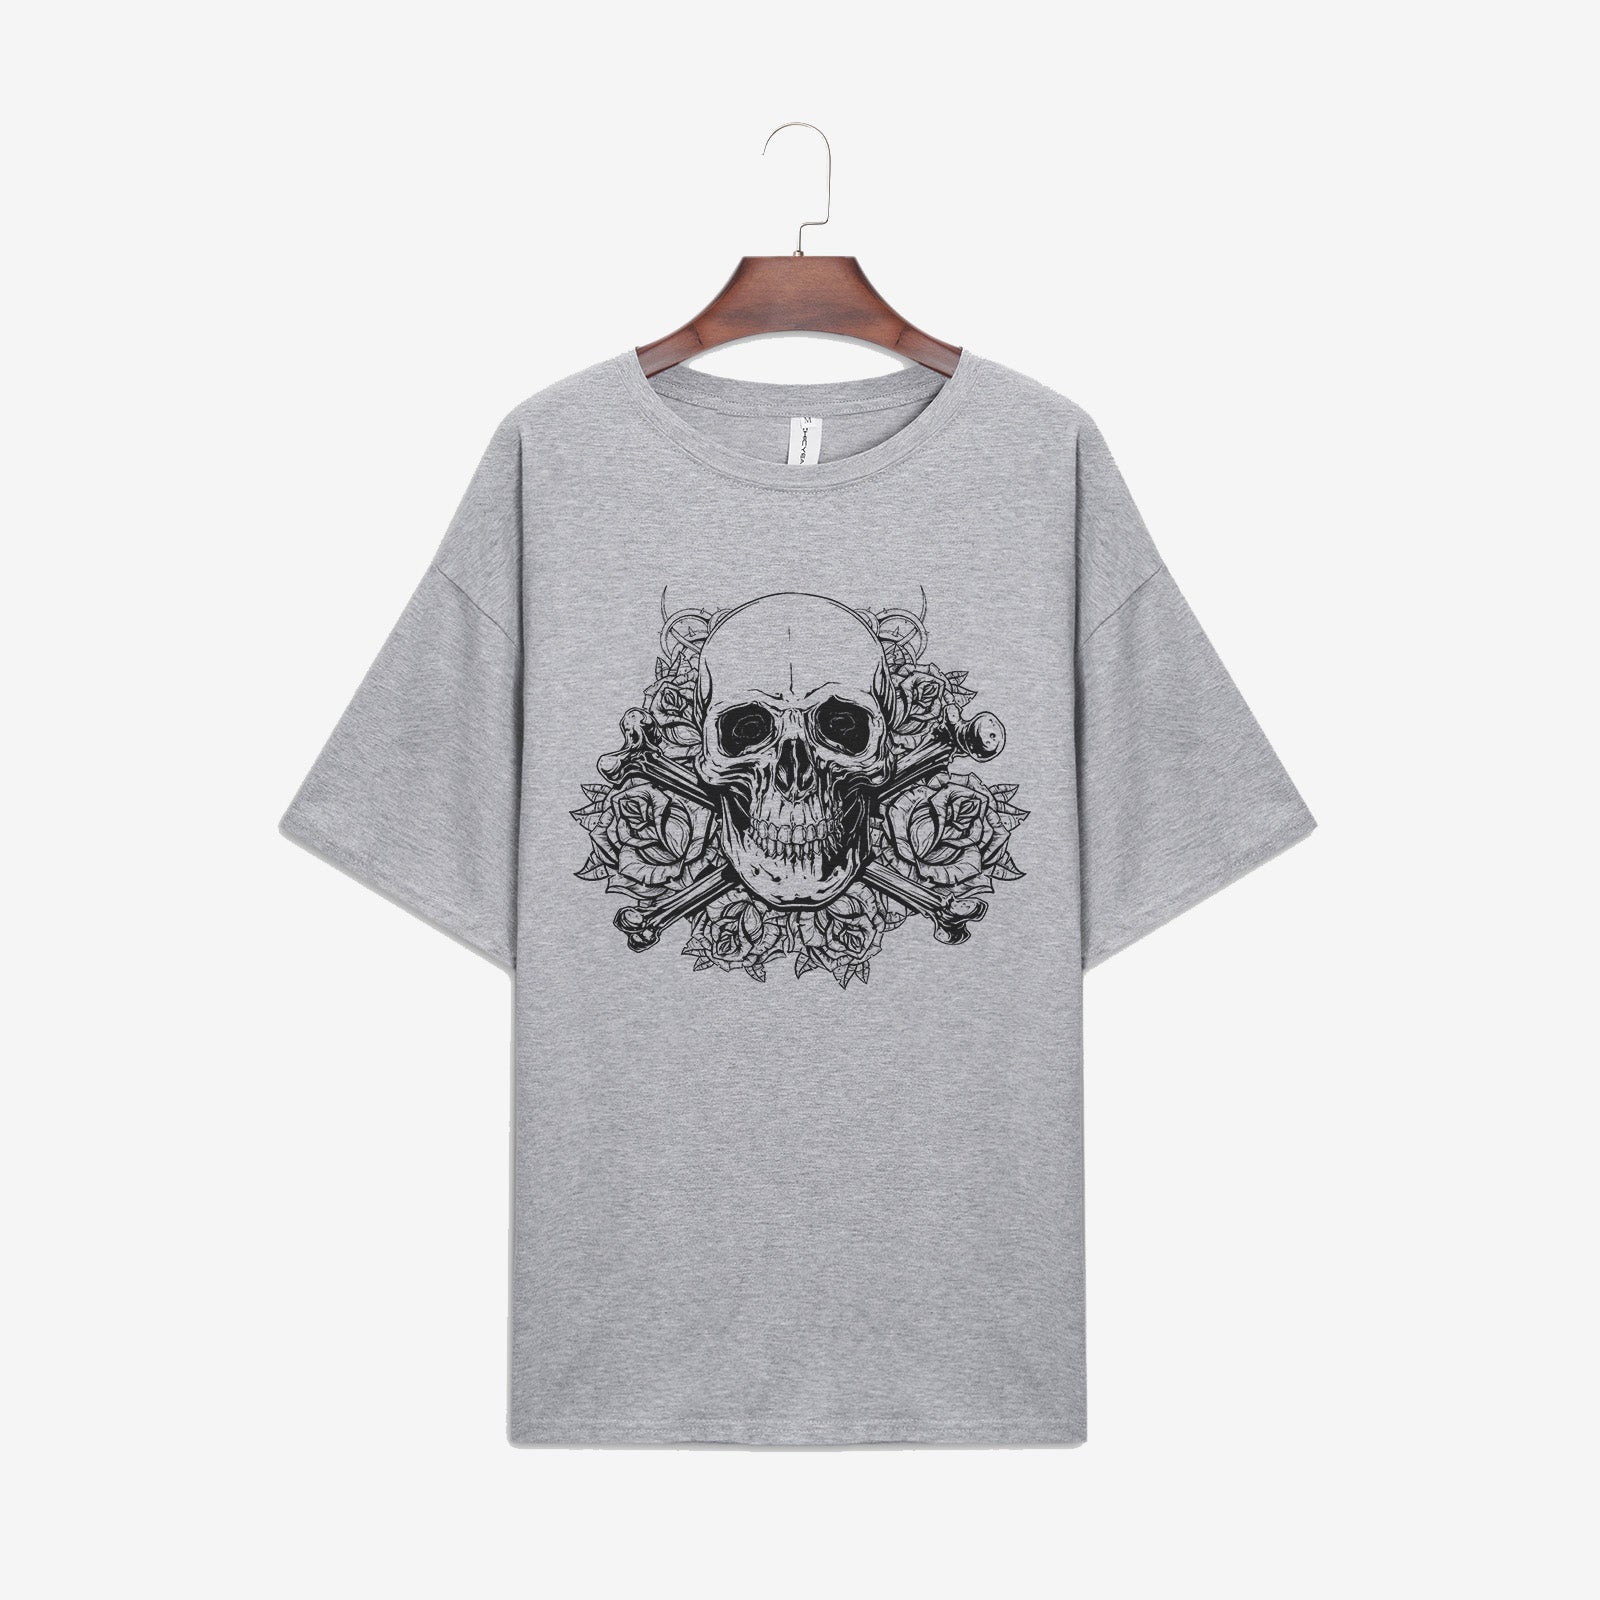 Minnieskull Skull Flower Print T-Shirt - chicyea